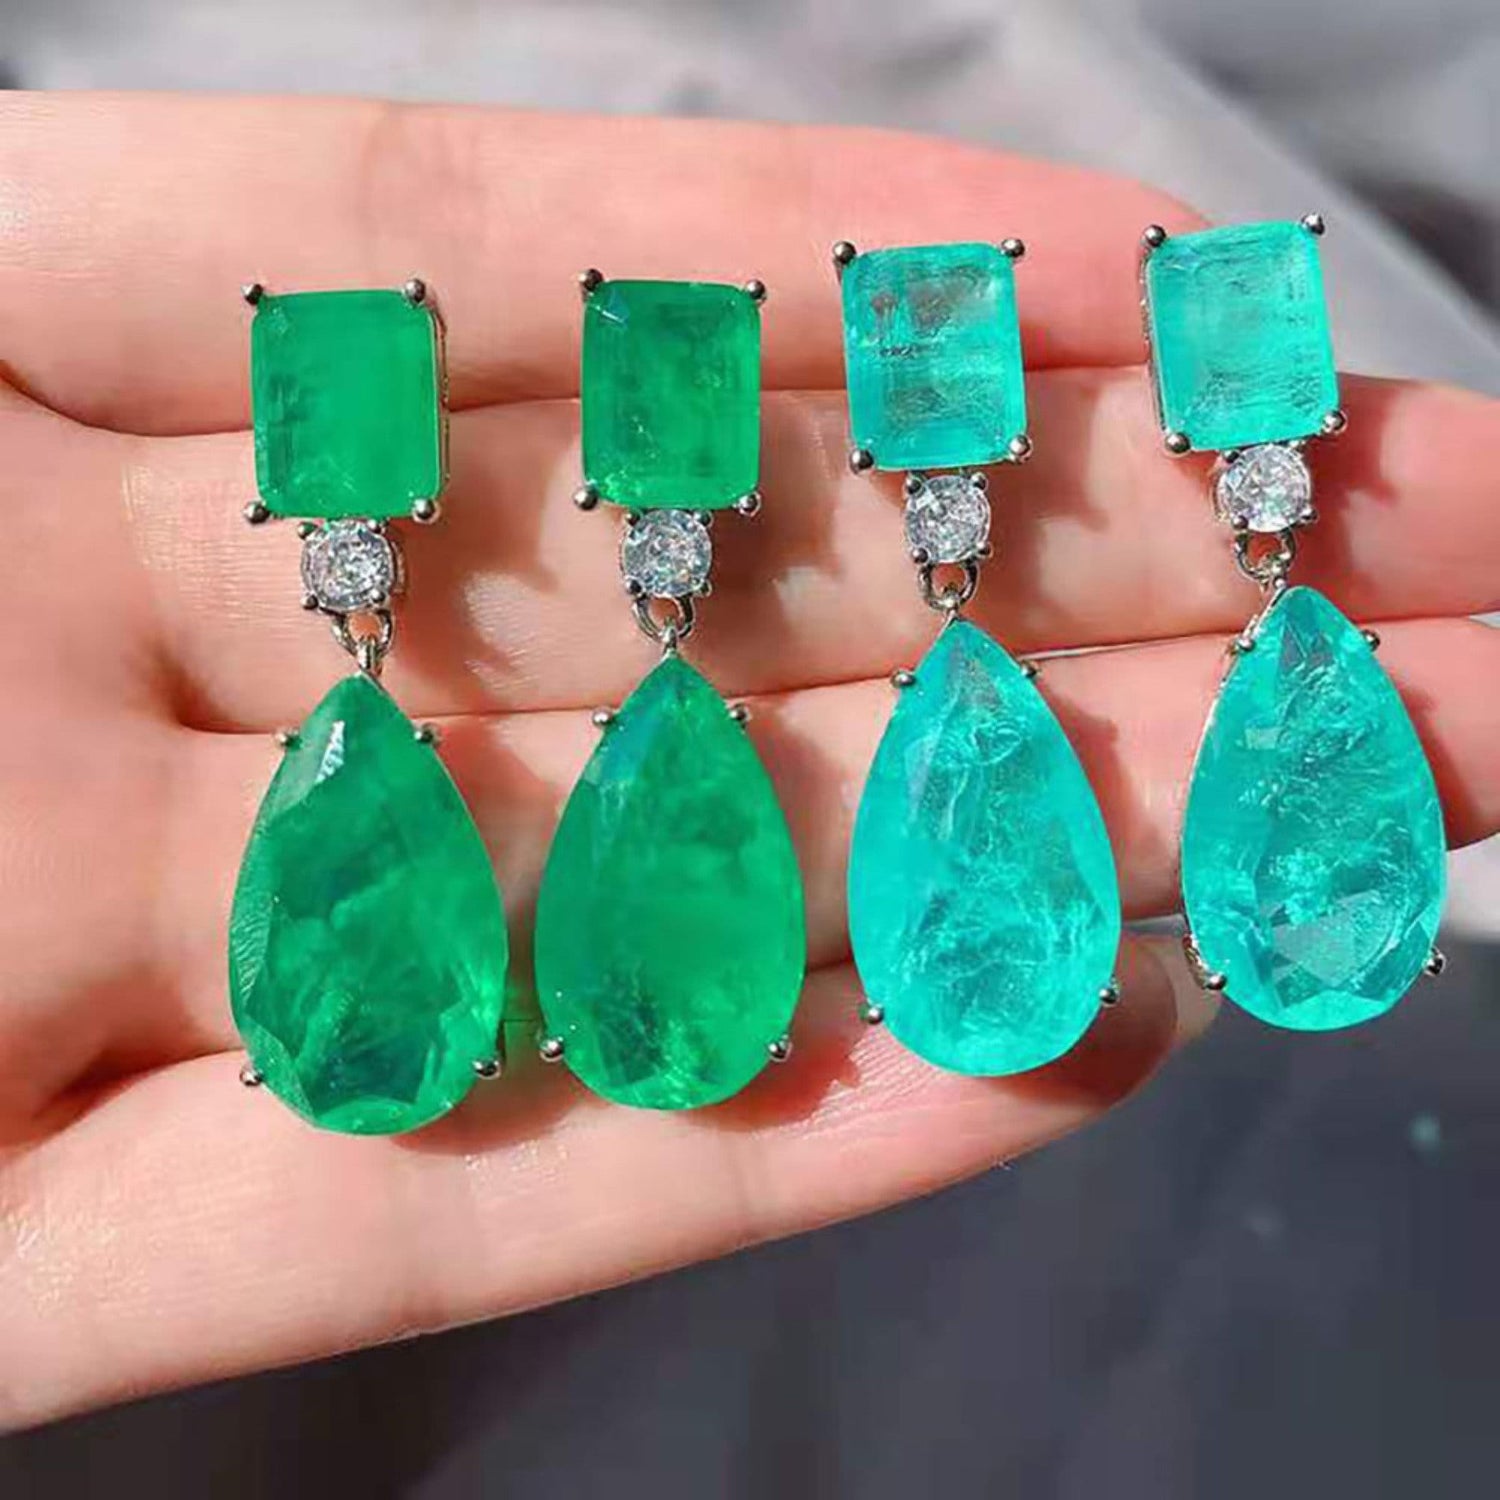 Paraiba Tourmaline Drop Earrings \ Dangle Earrings \ Pear Tourmaline Earrings \ Emerald Green Drop Earrings \ Ocean Blue Tourmaline Earrings